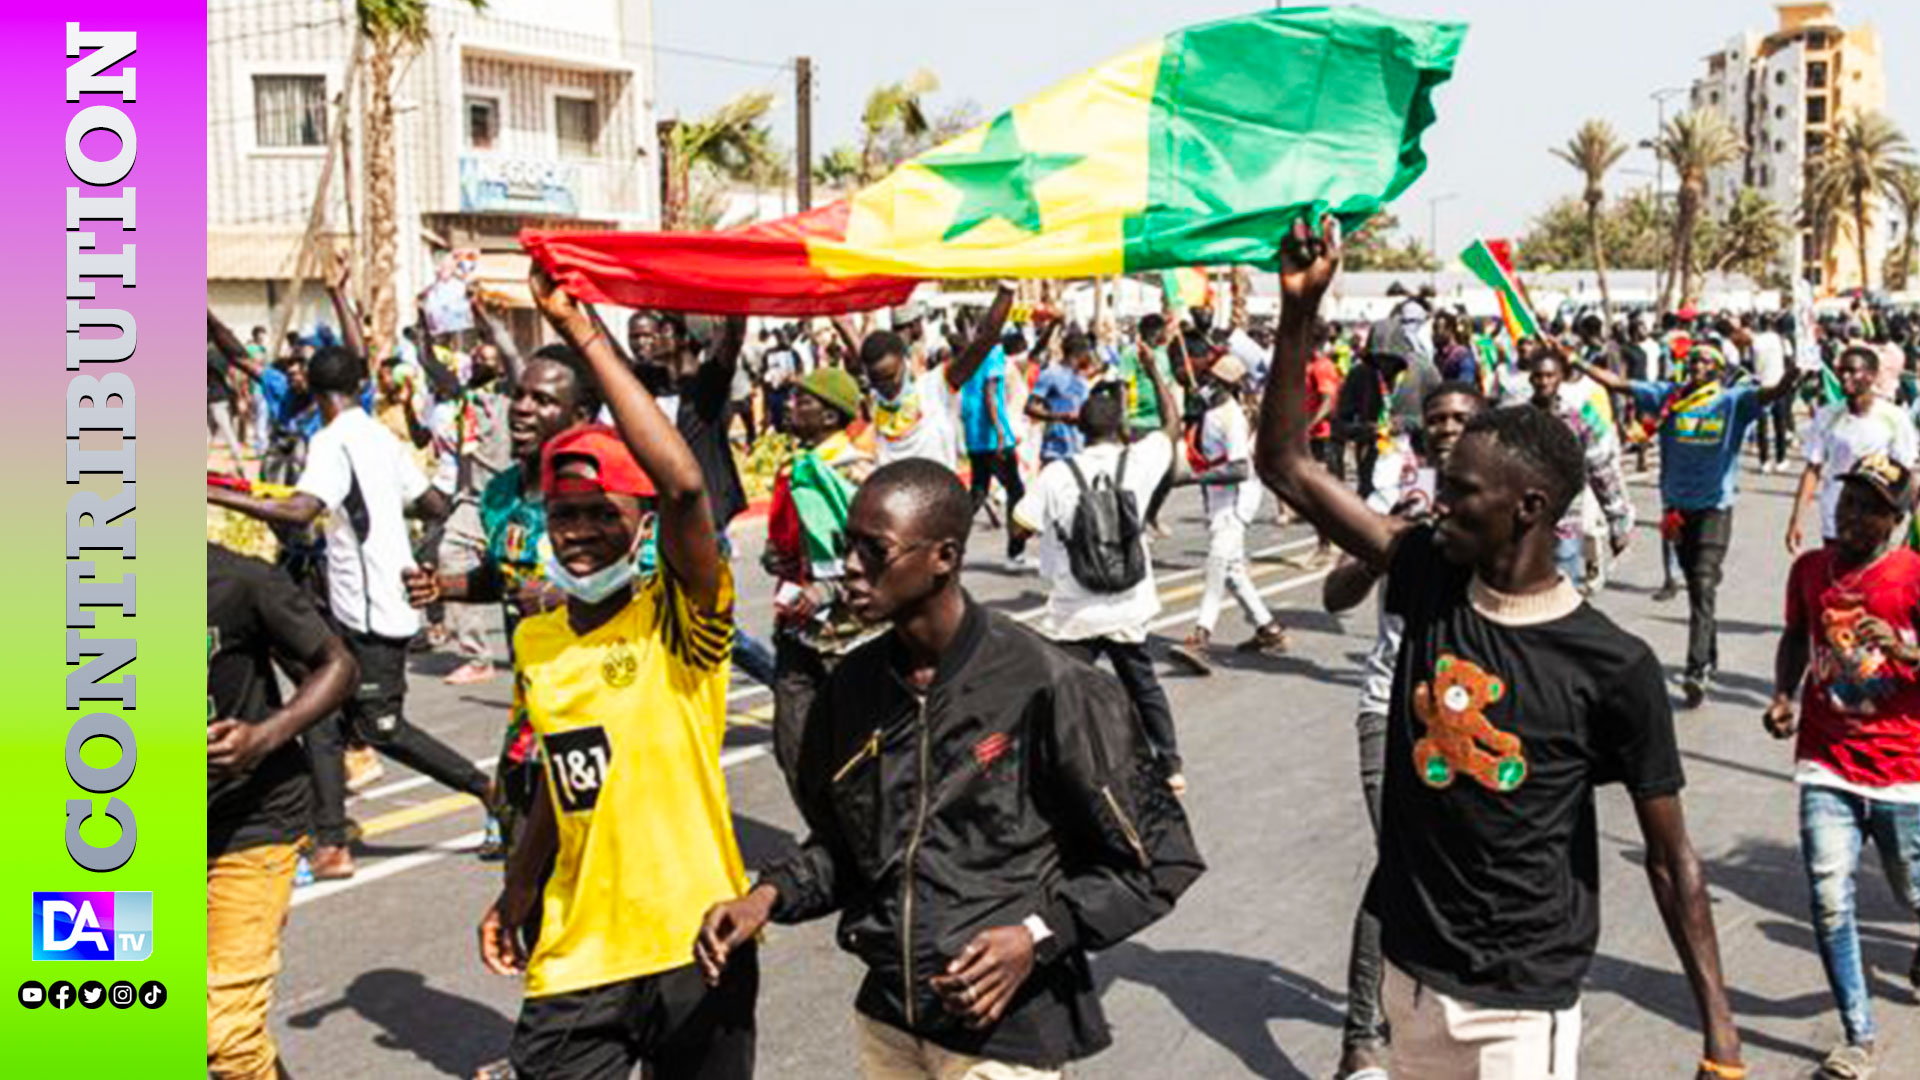 La jeunesse en phase de réappropriation de l’espace politique sénégalais : entre conscience citoyenne et réinvention sociale